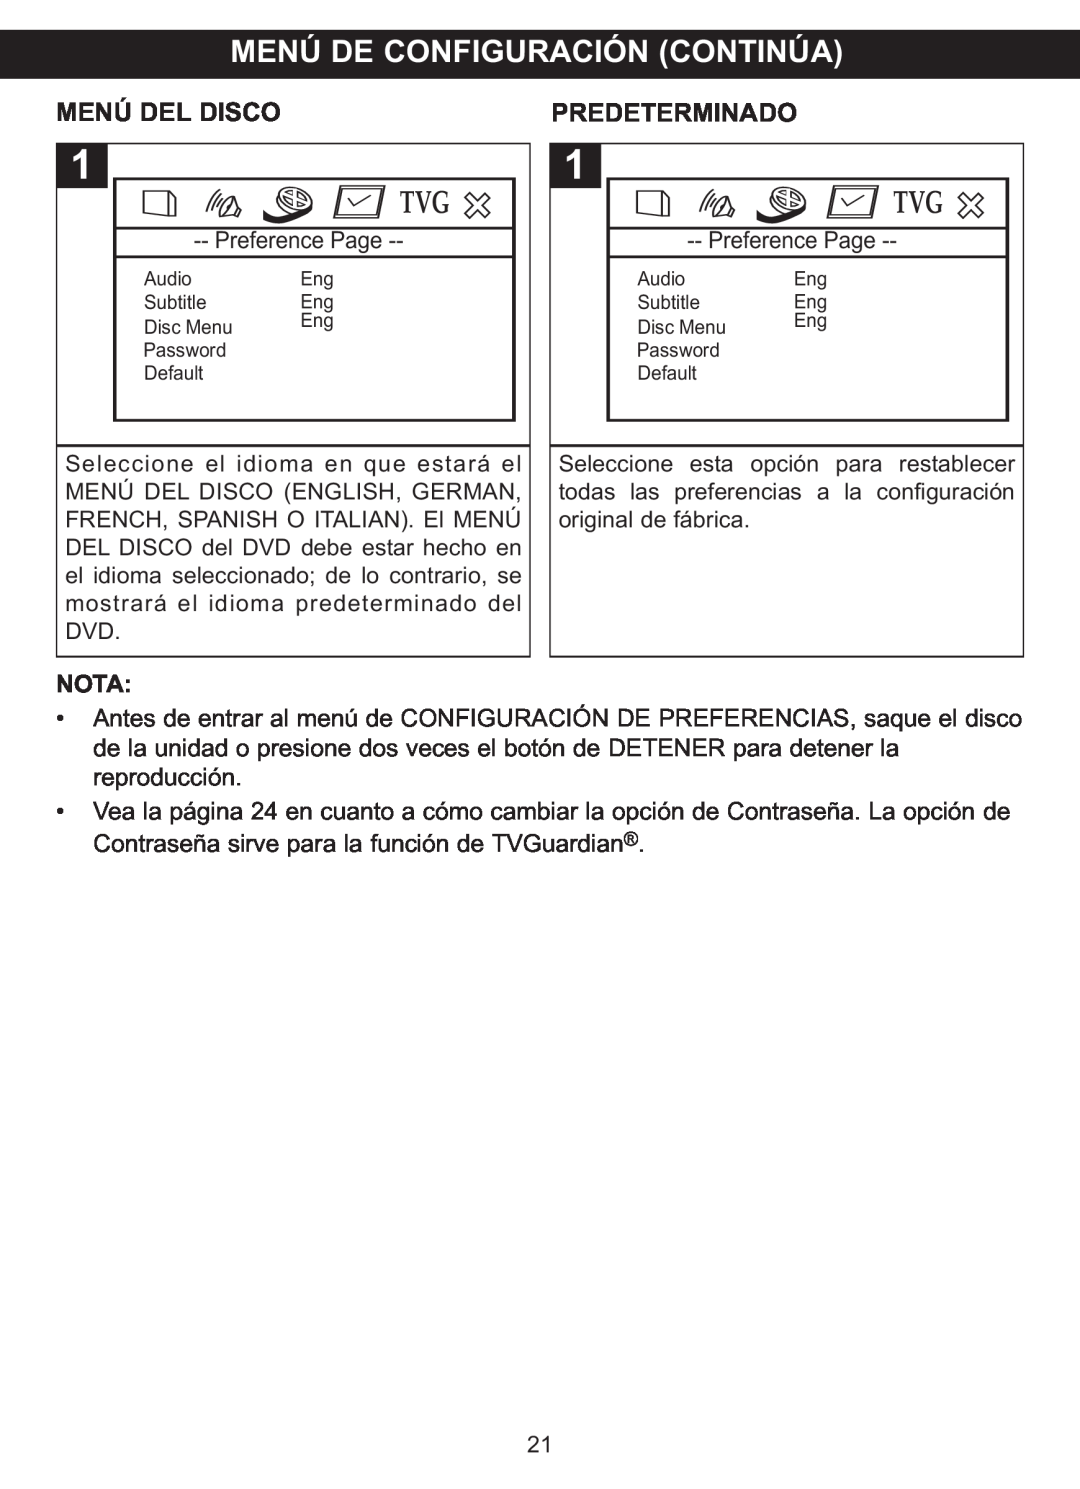 Memorex MVDP1088 manual Menú De Configuración Continúa, Menú Del Disco, Predeterminado, Nota 